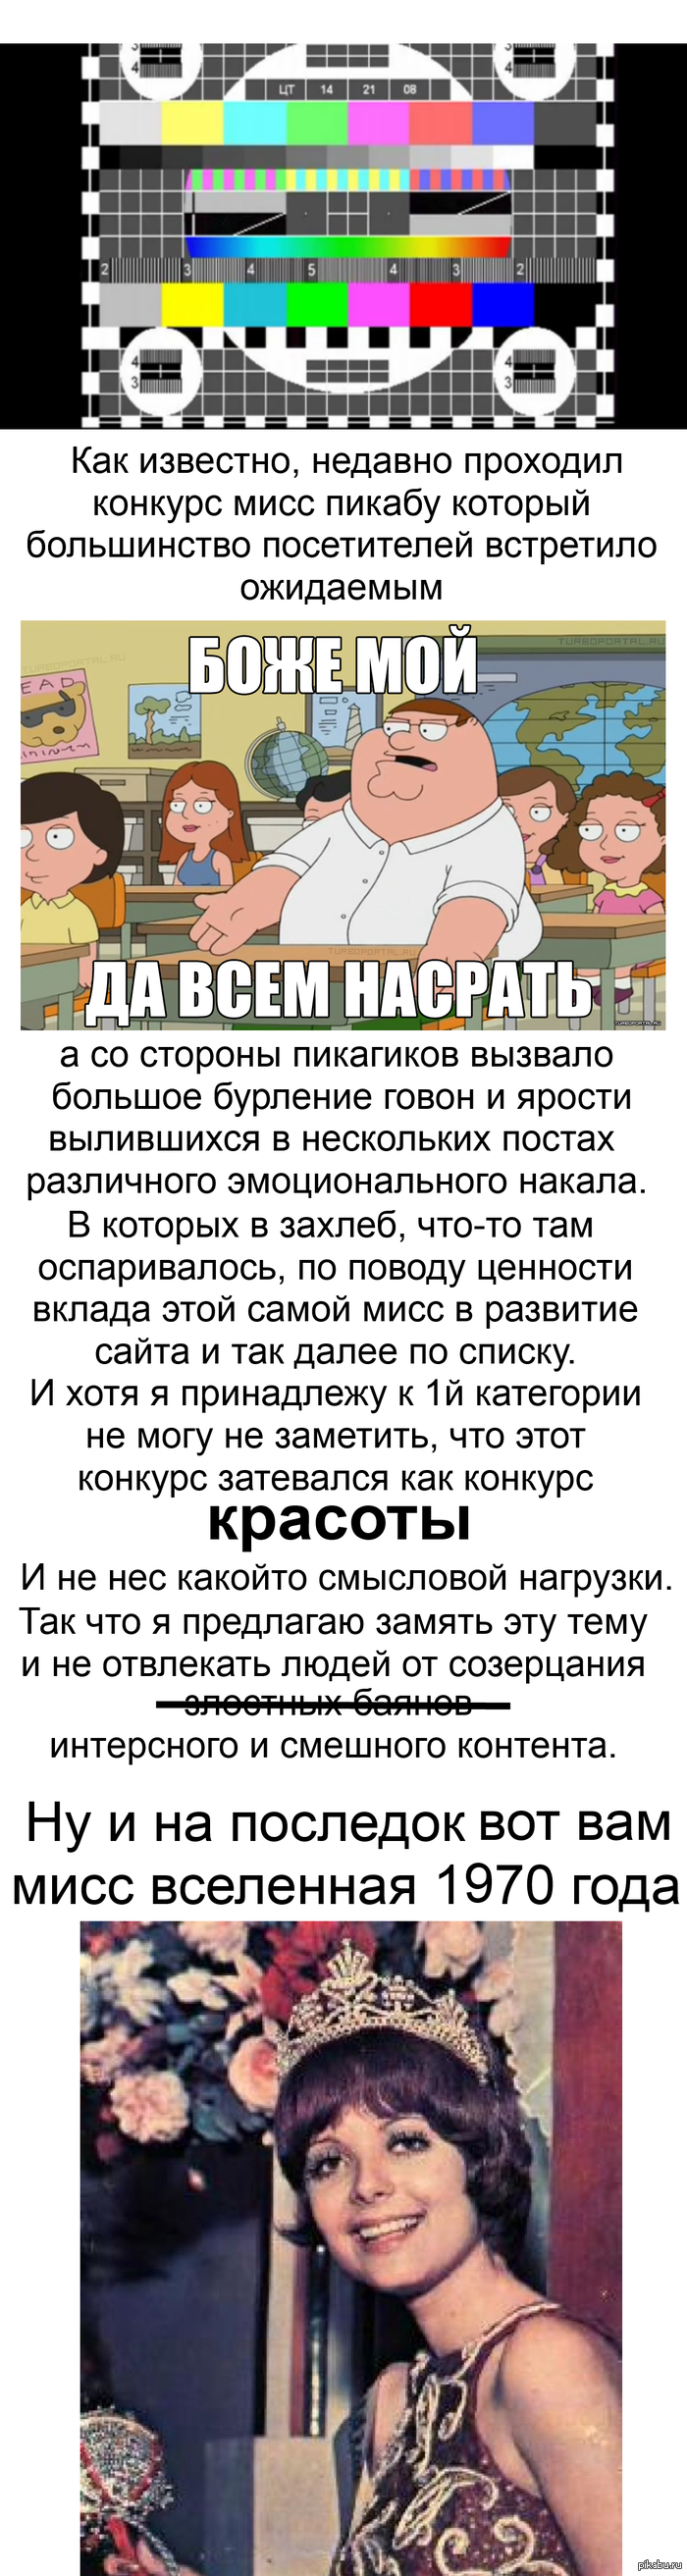      <a href="http://pikabu.ru/story/pozdravlyayu_pobeditelnitsu_koirto_s_chestnoy_pobedoy_1794131">http://pikabu.ru/story/_1794131</a>  <a href="http://pikabu.ru/story/miss_pikabu_1793016">http://pikabu.ru/story/_1793016</a>